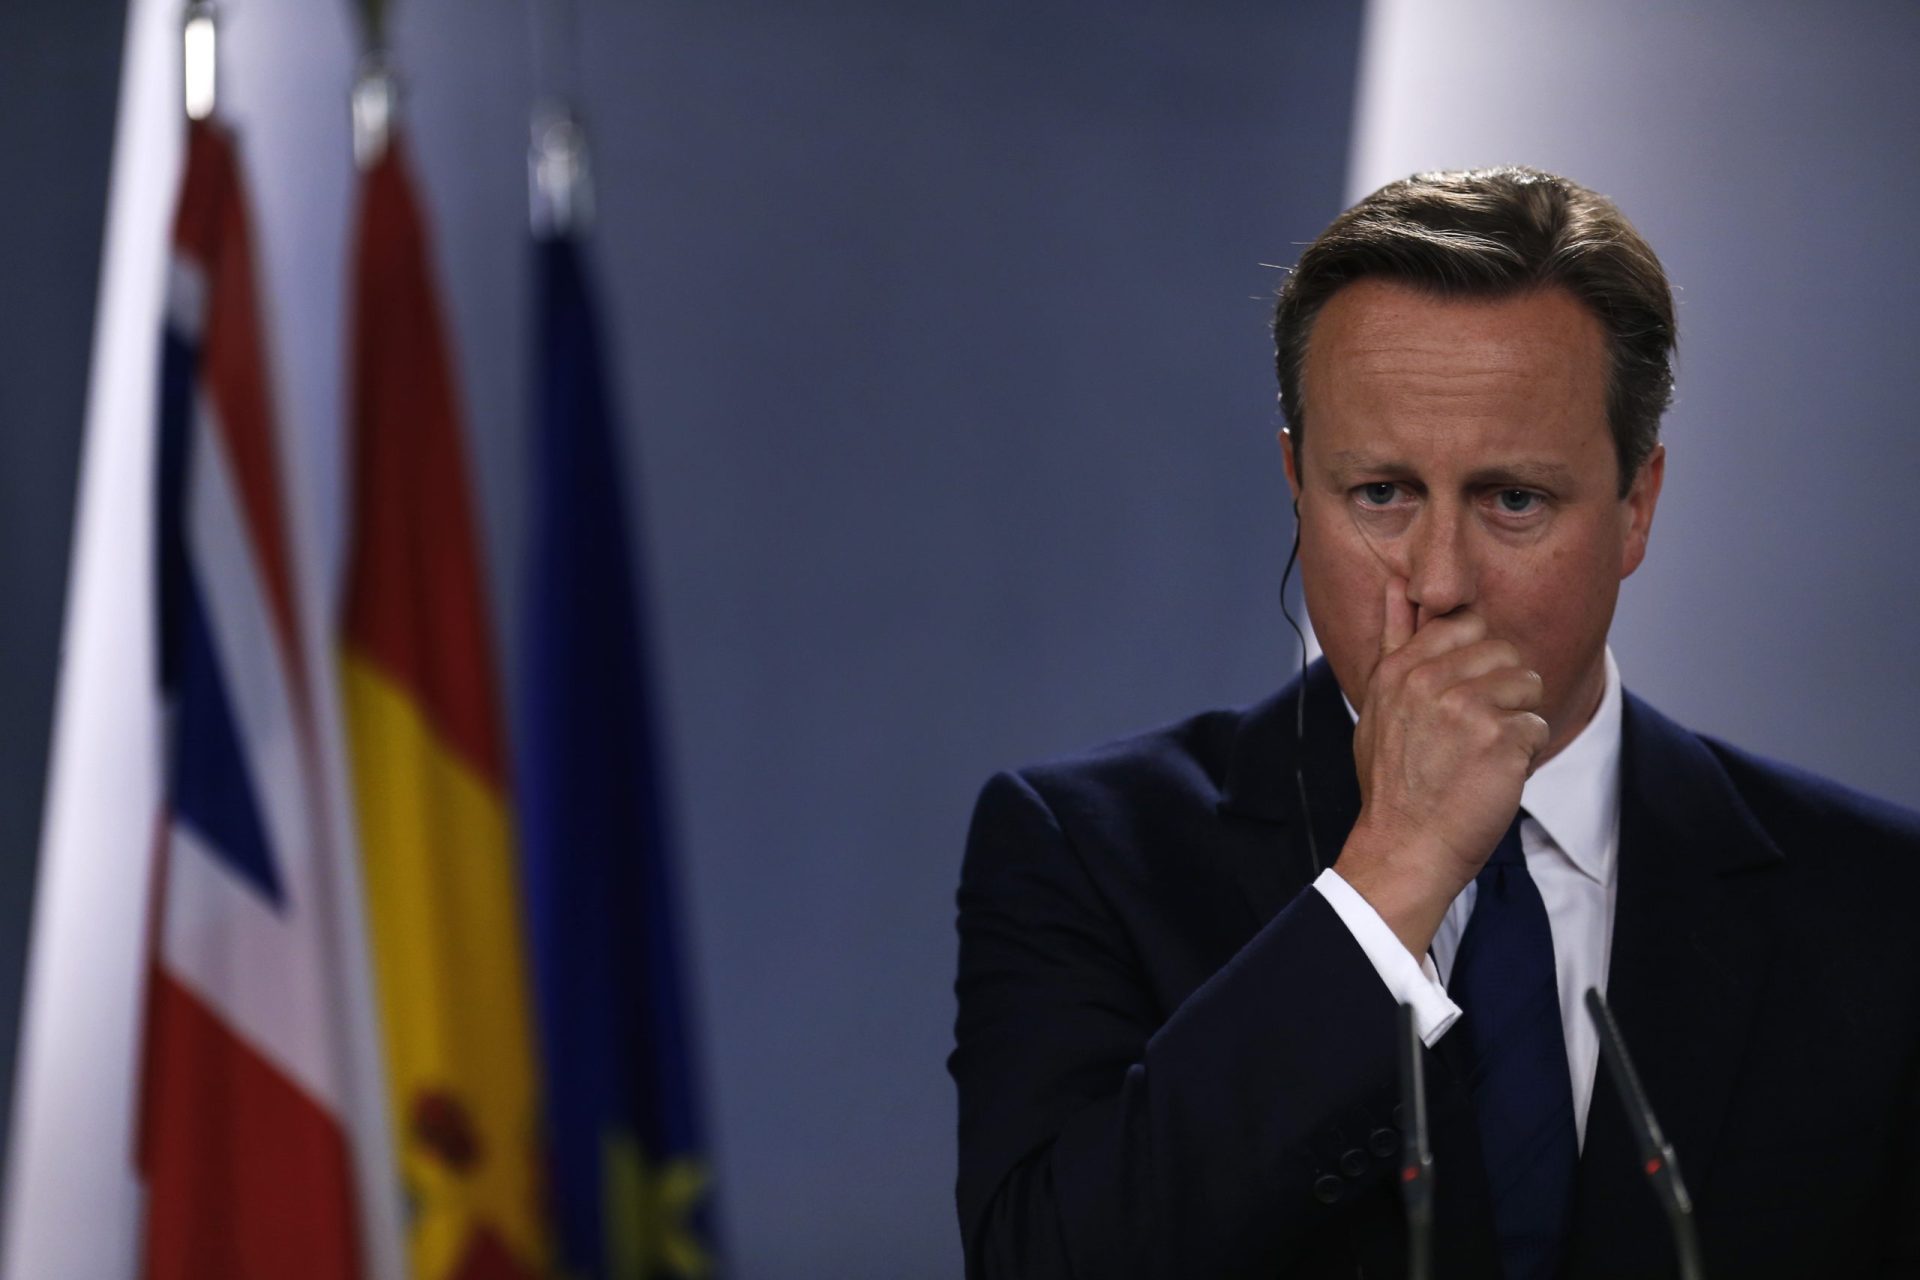 Cameron apanhado a dar &#8216;palmadinha&#8217; no rabo de um ministro [vídeo]